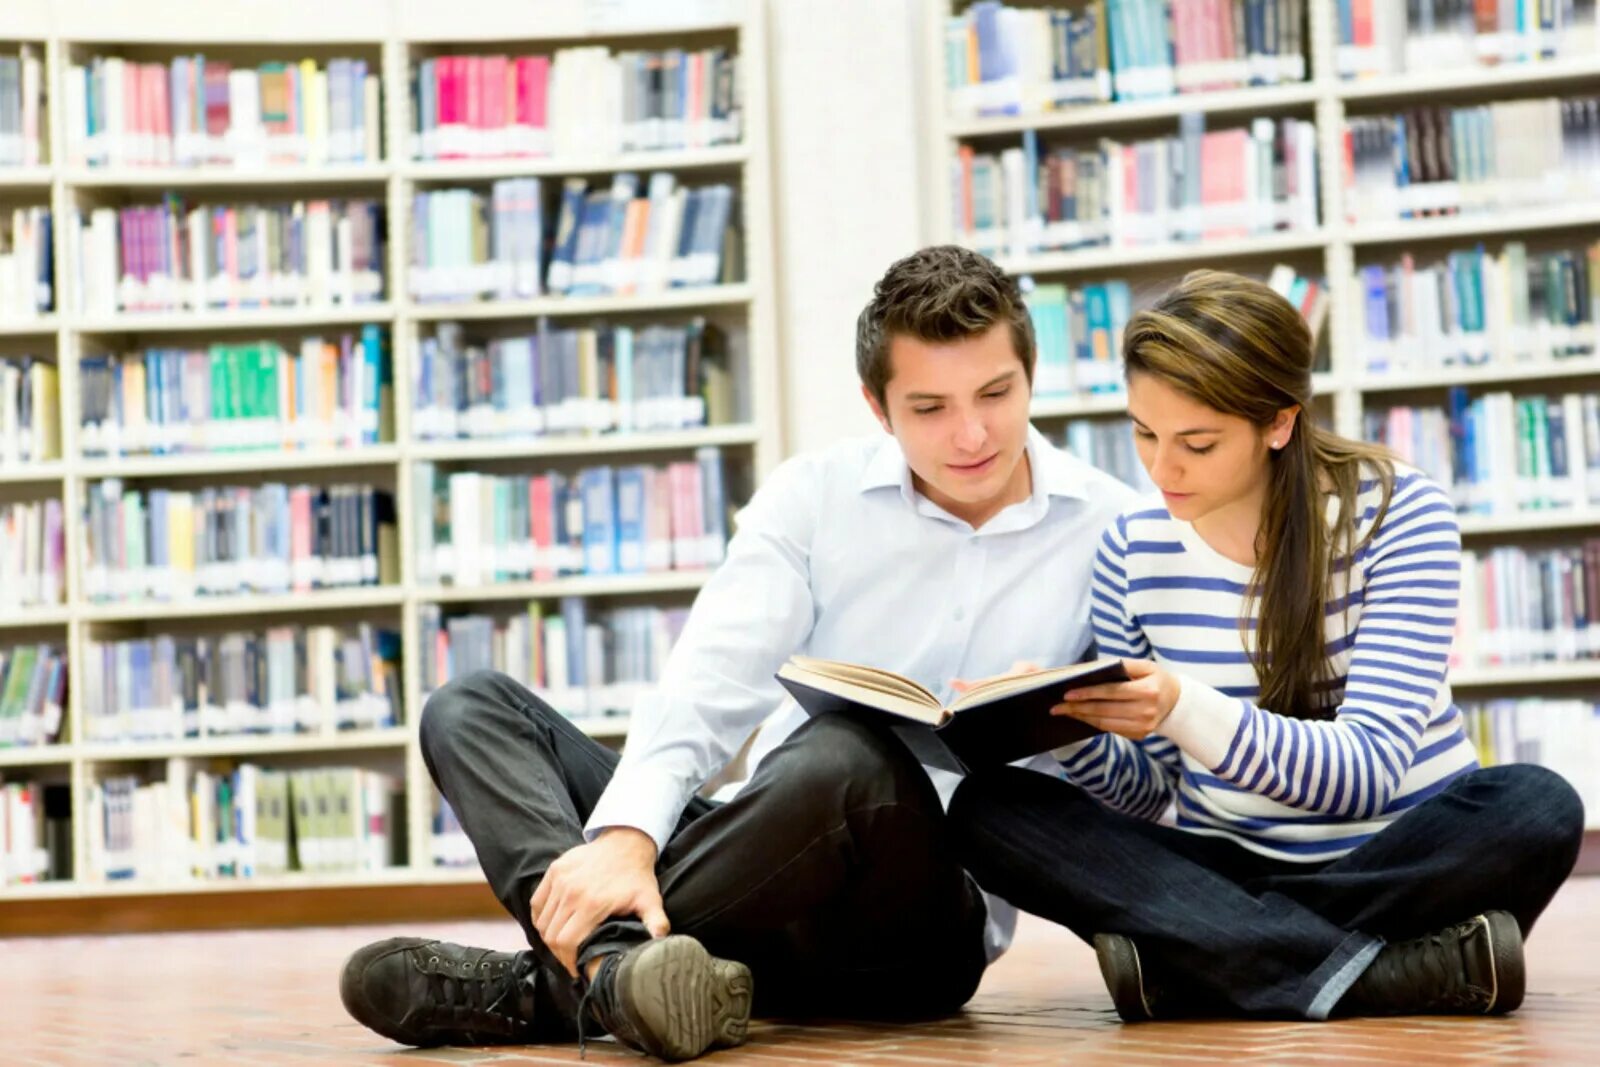 Библиотека студента. Подростки в библиотеке. Подросток с книгой. Книга человек. Молодежь и книга.